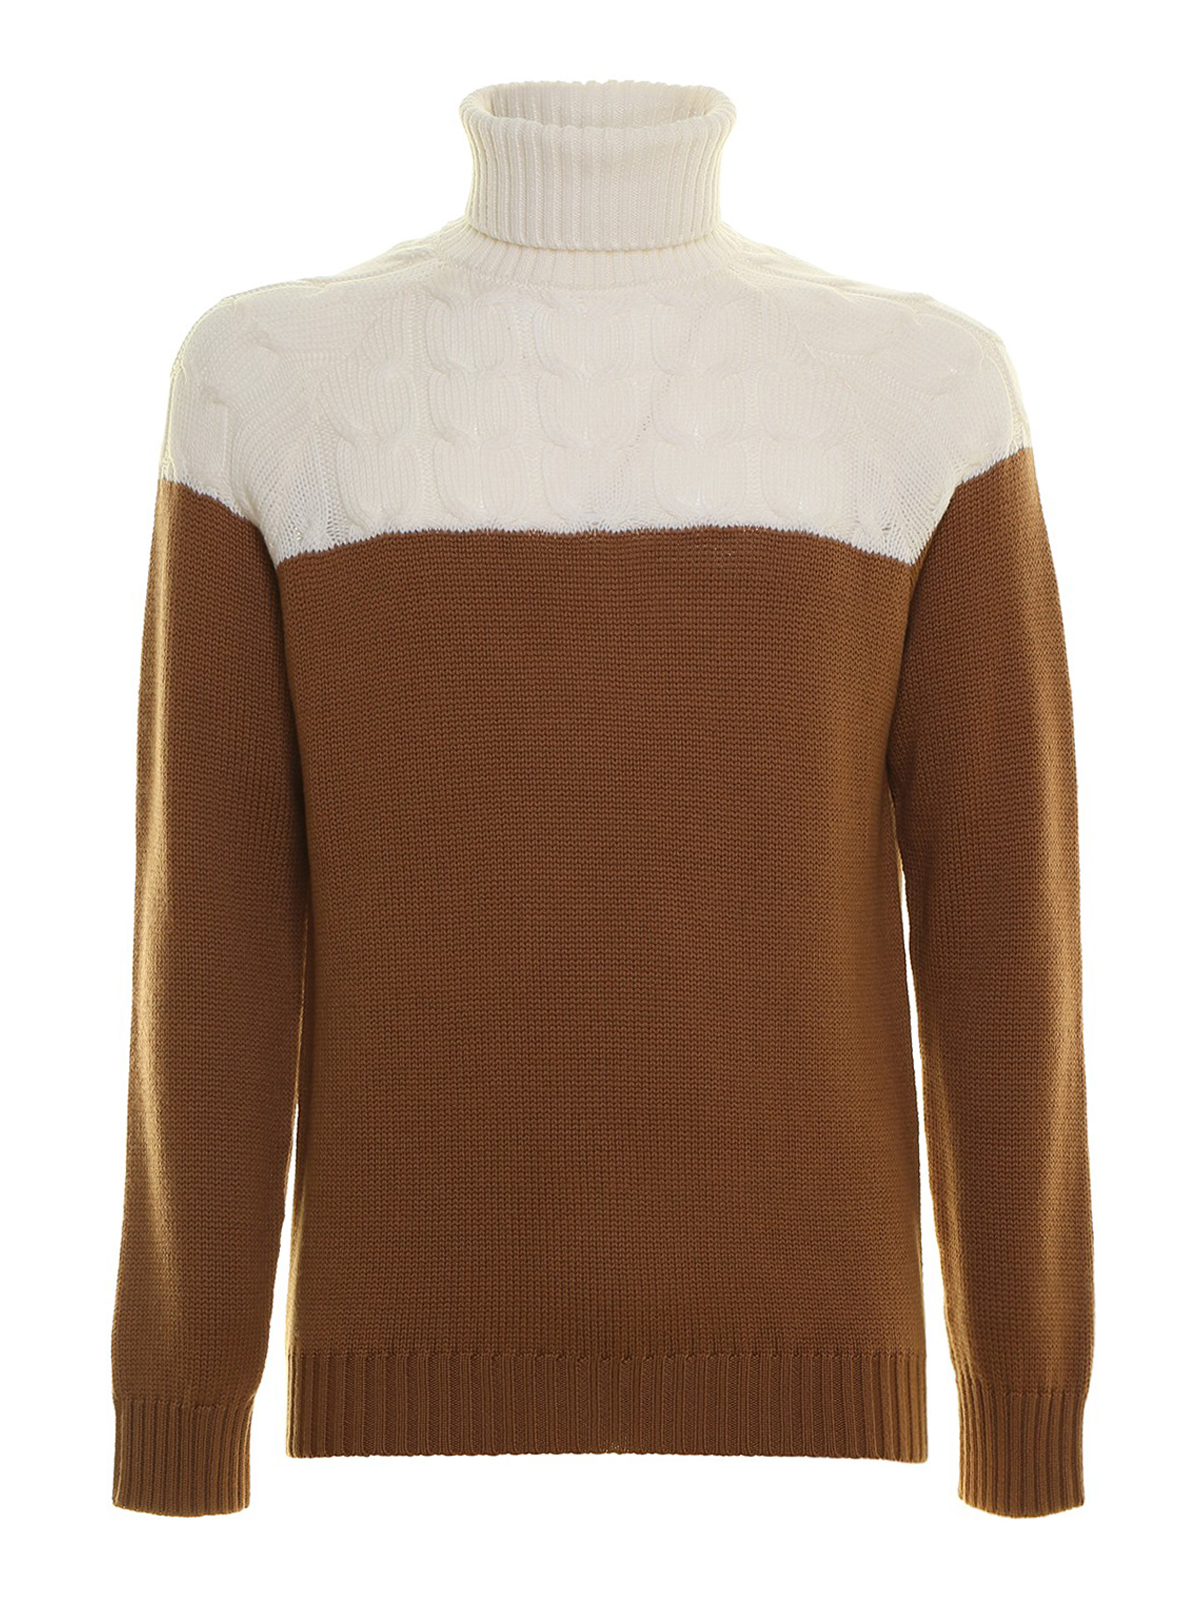 Two-tone wool sweater